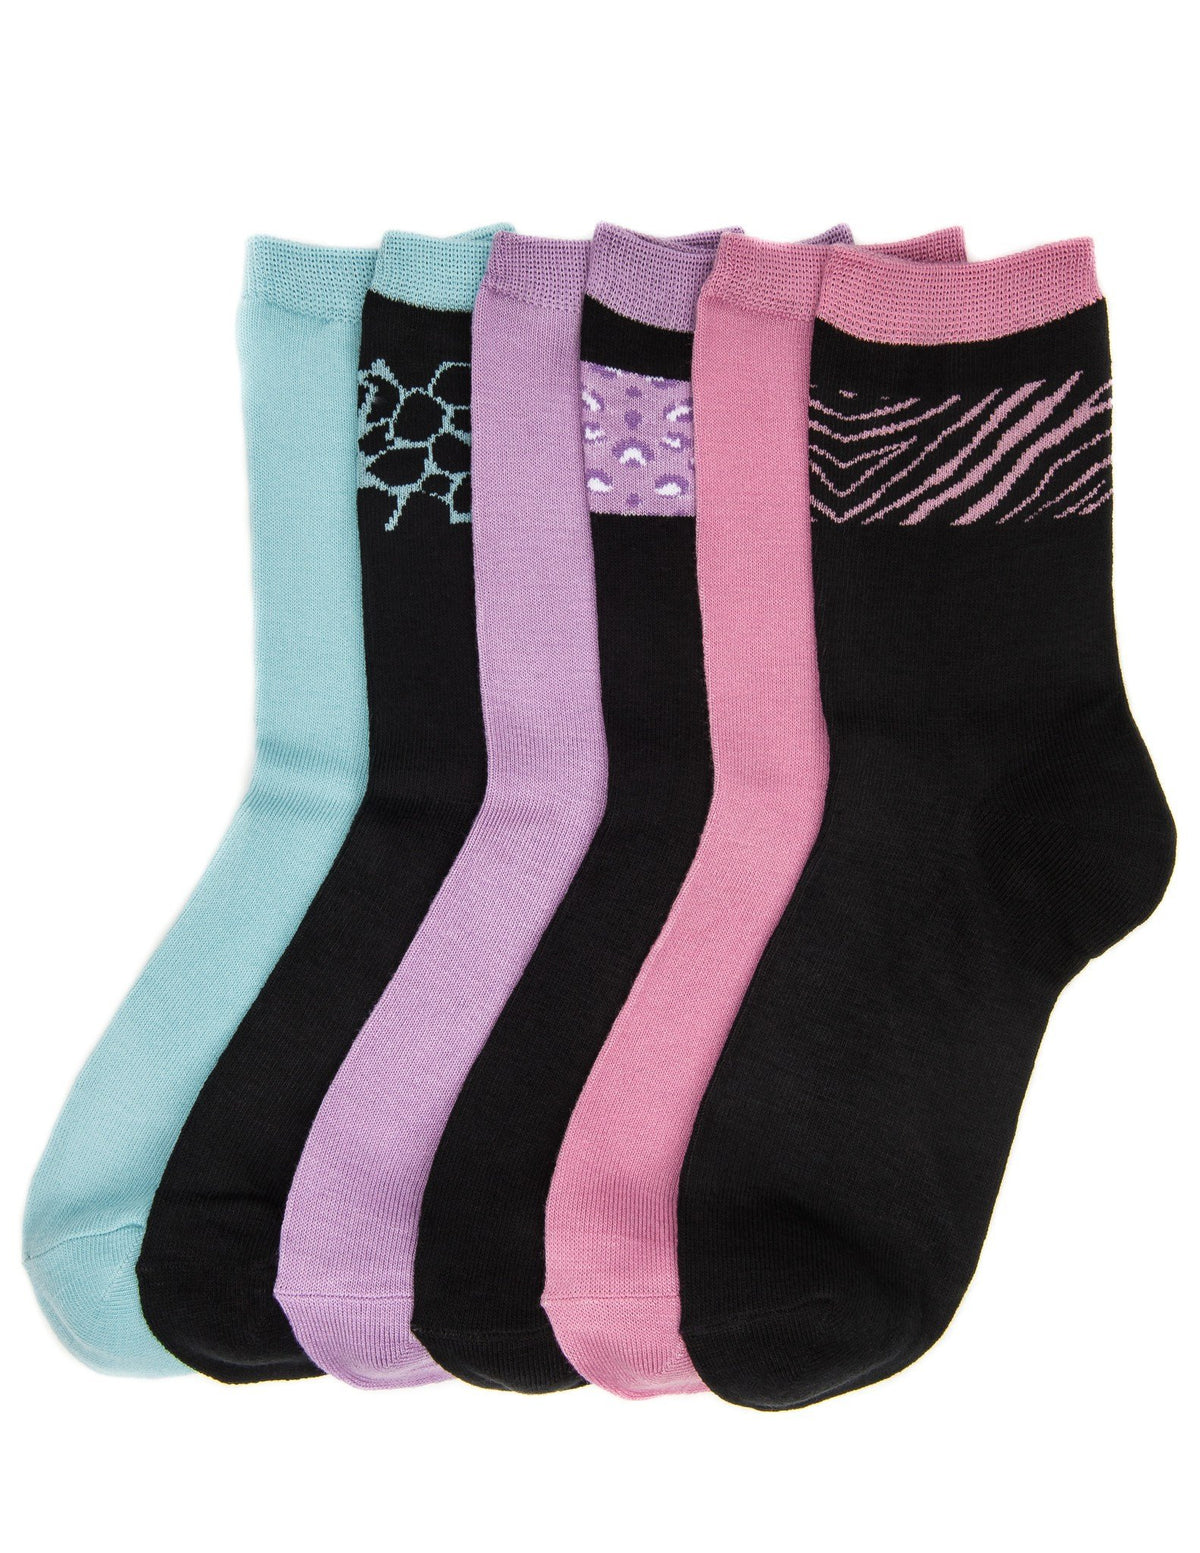 Women's Soft Premium Crew Socks - 6 Pairs - Set 4